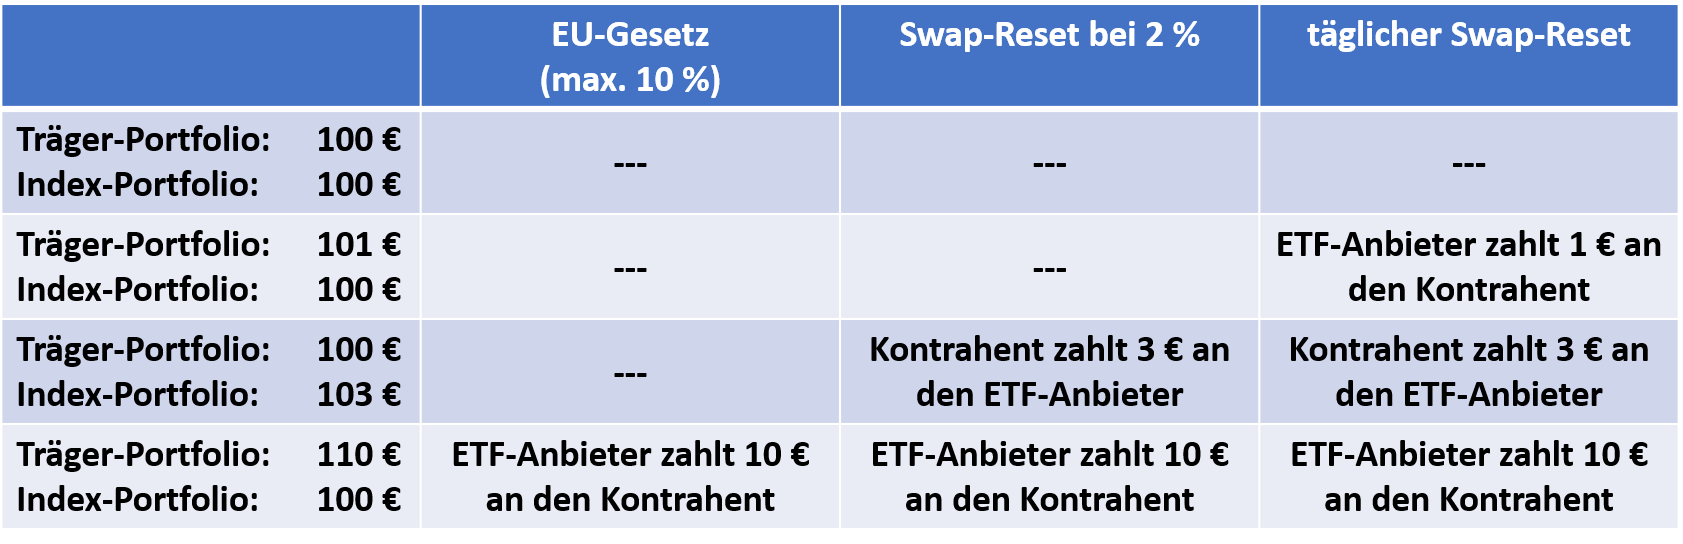 Swap-Reset